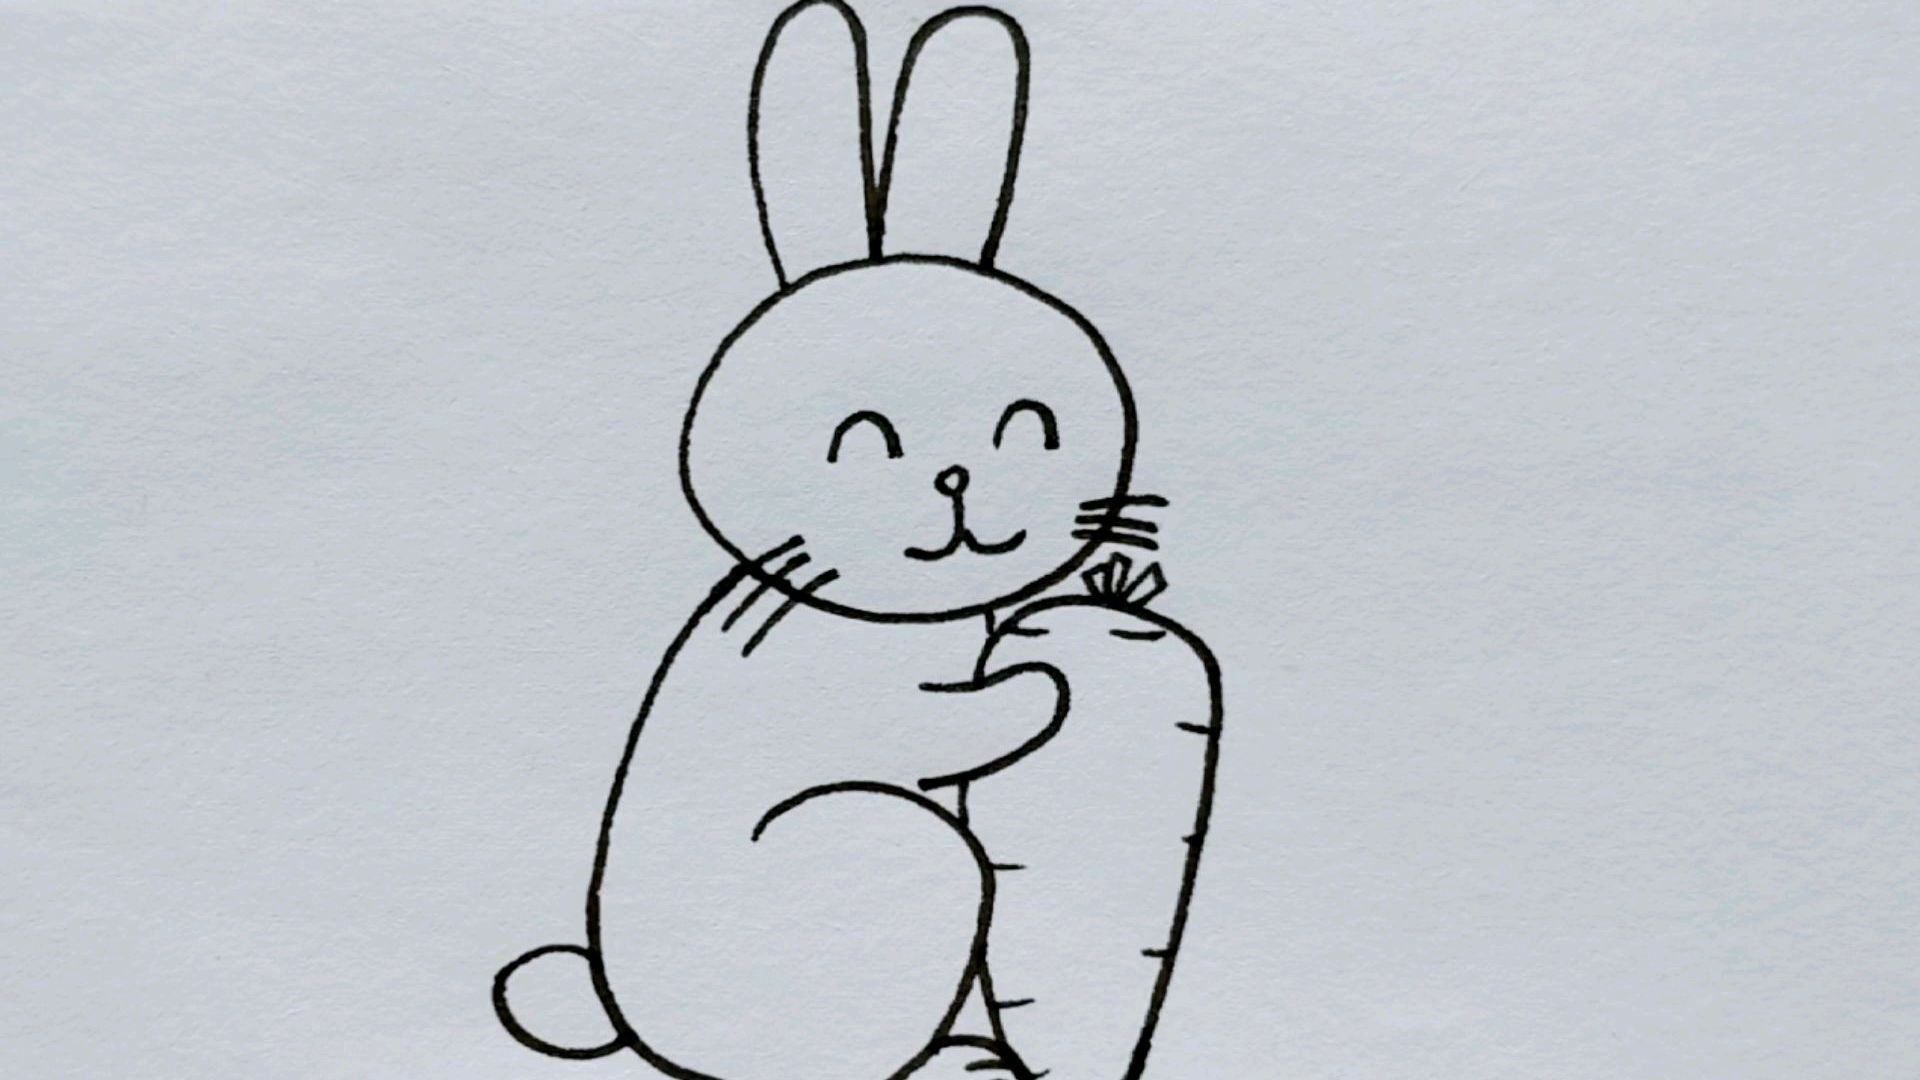 数字创意画,用0123画小兔子